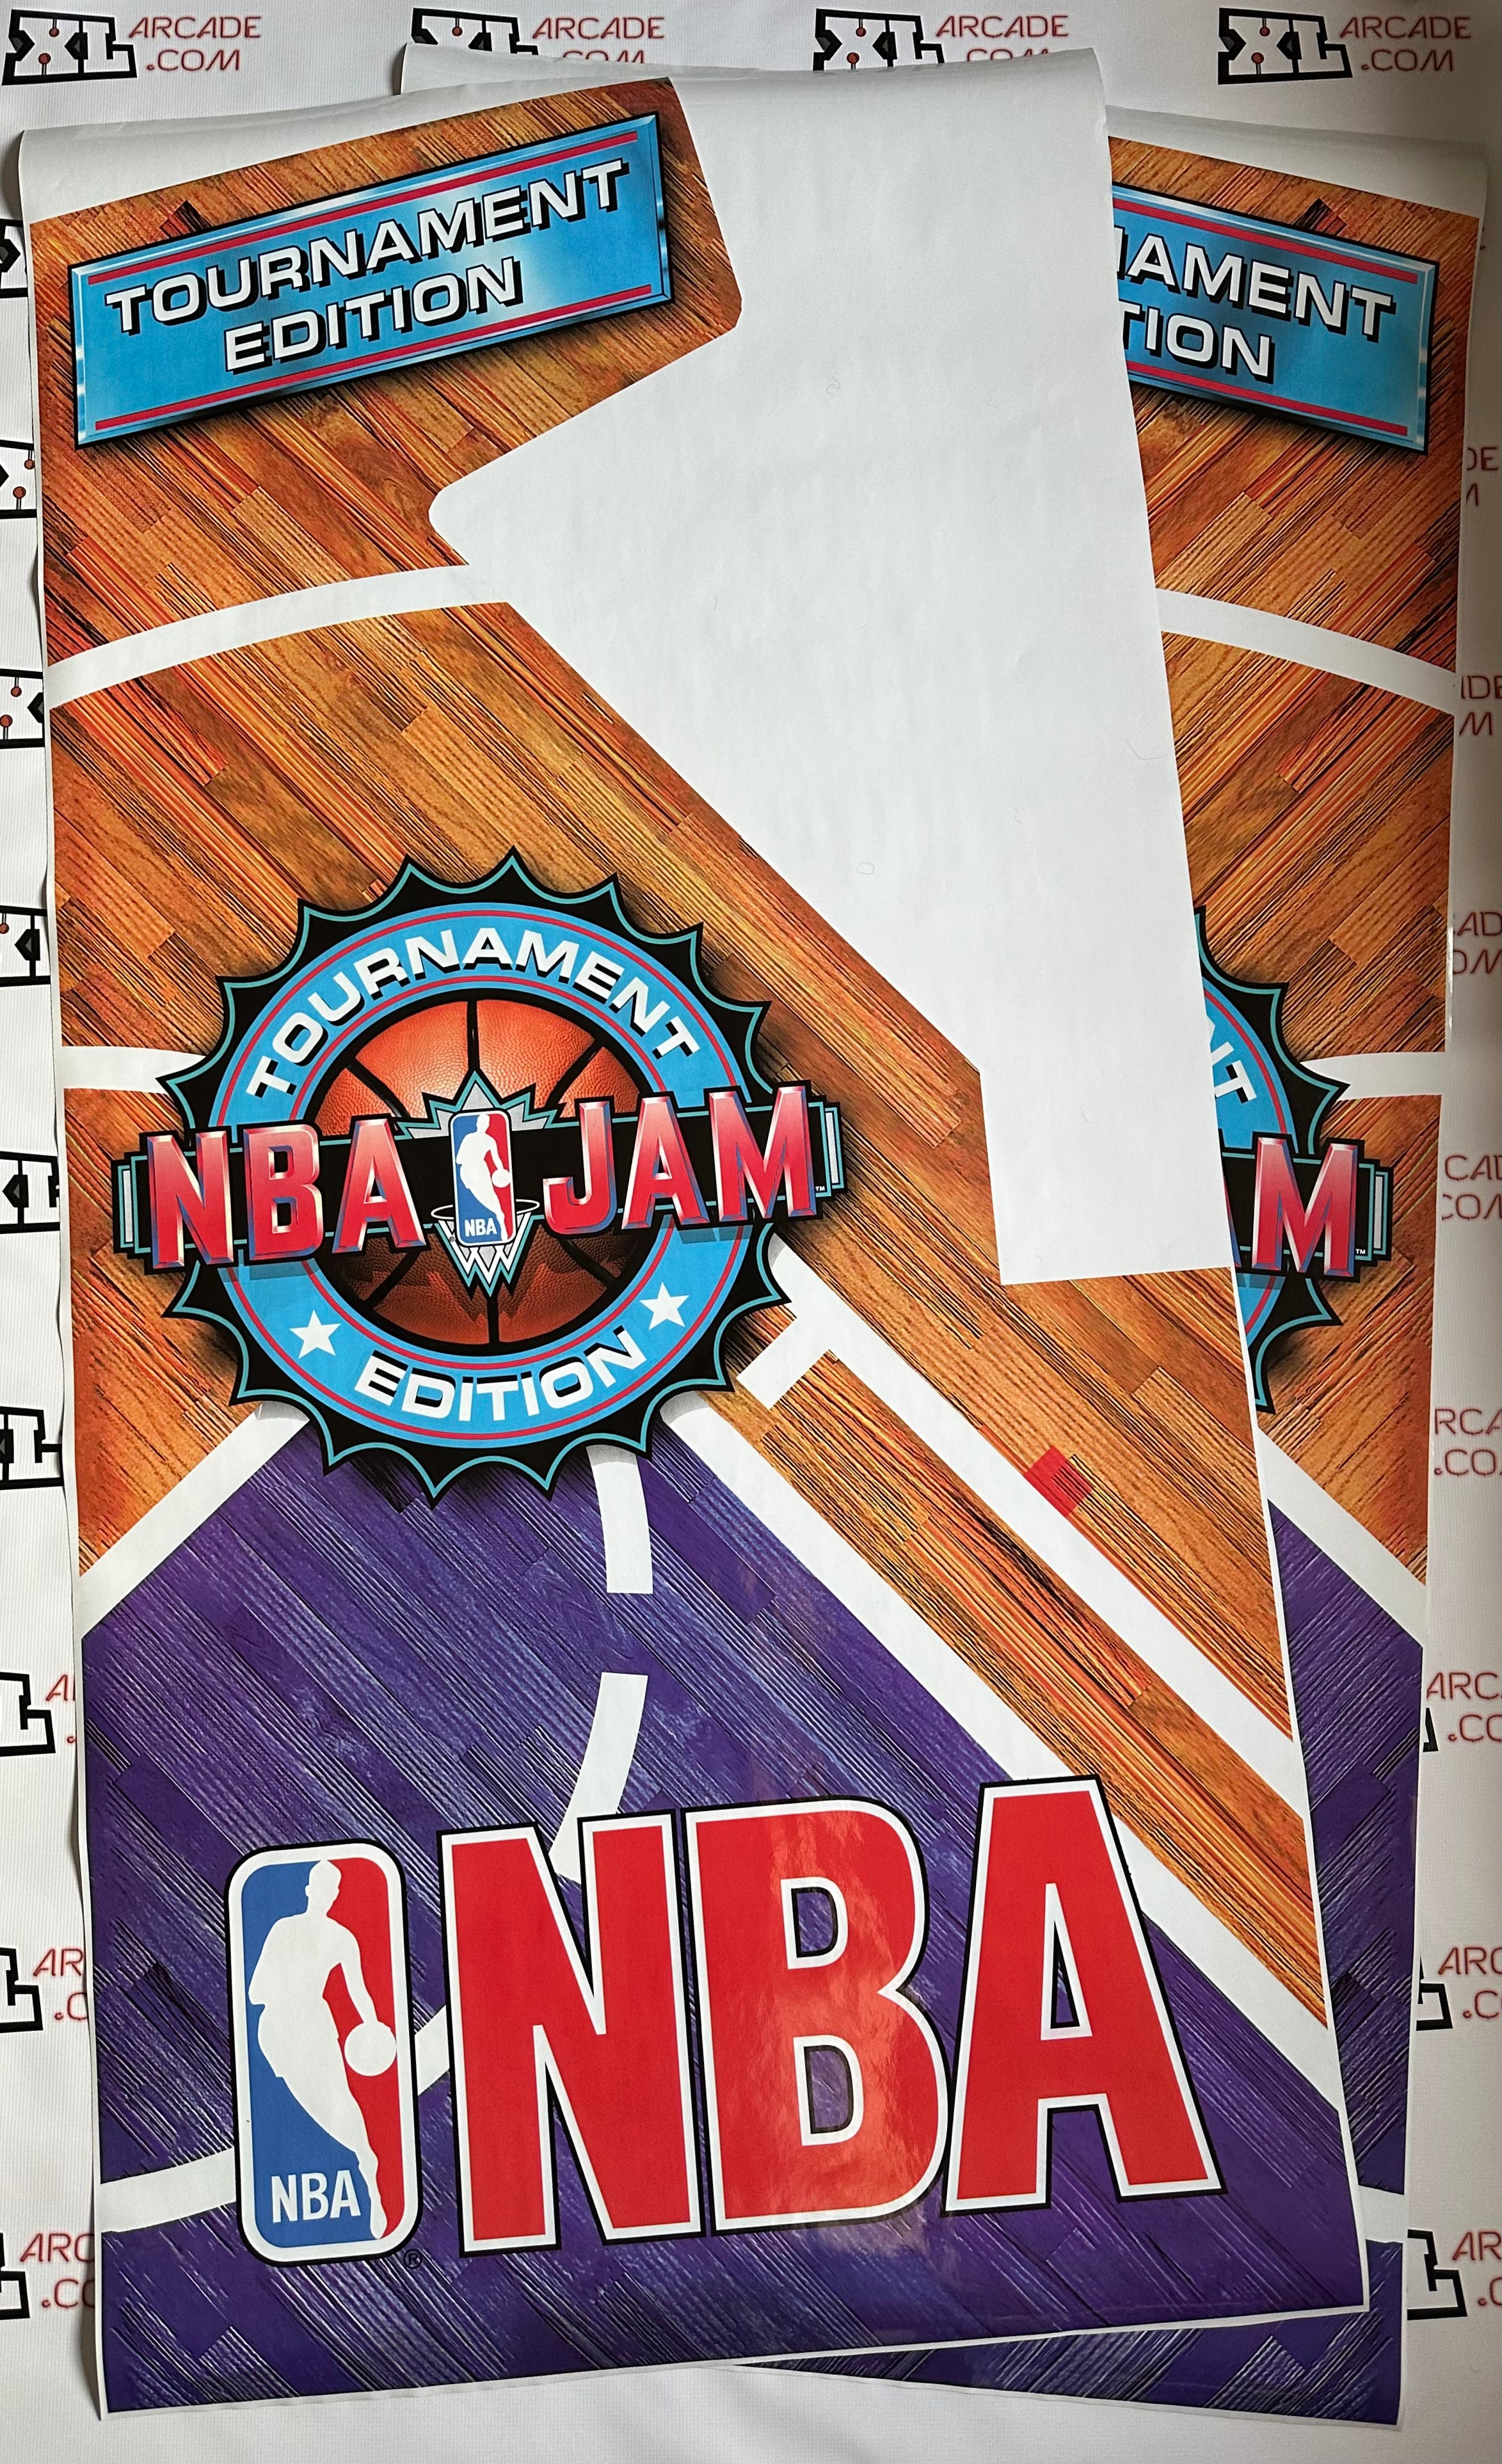 Art latéral de l’édition du tournoi NBA Jam